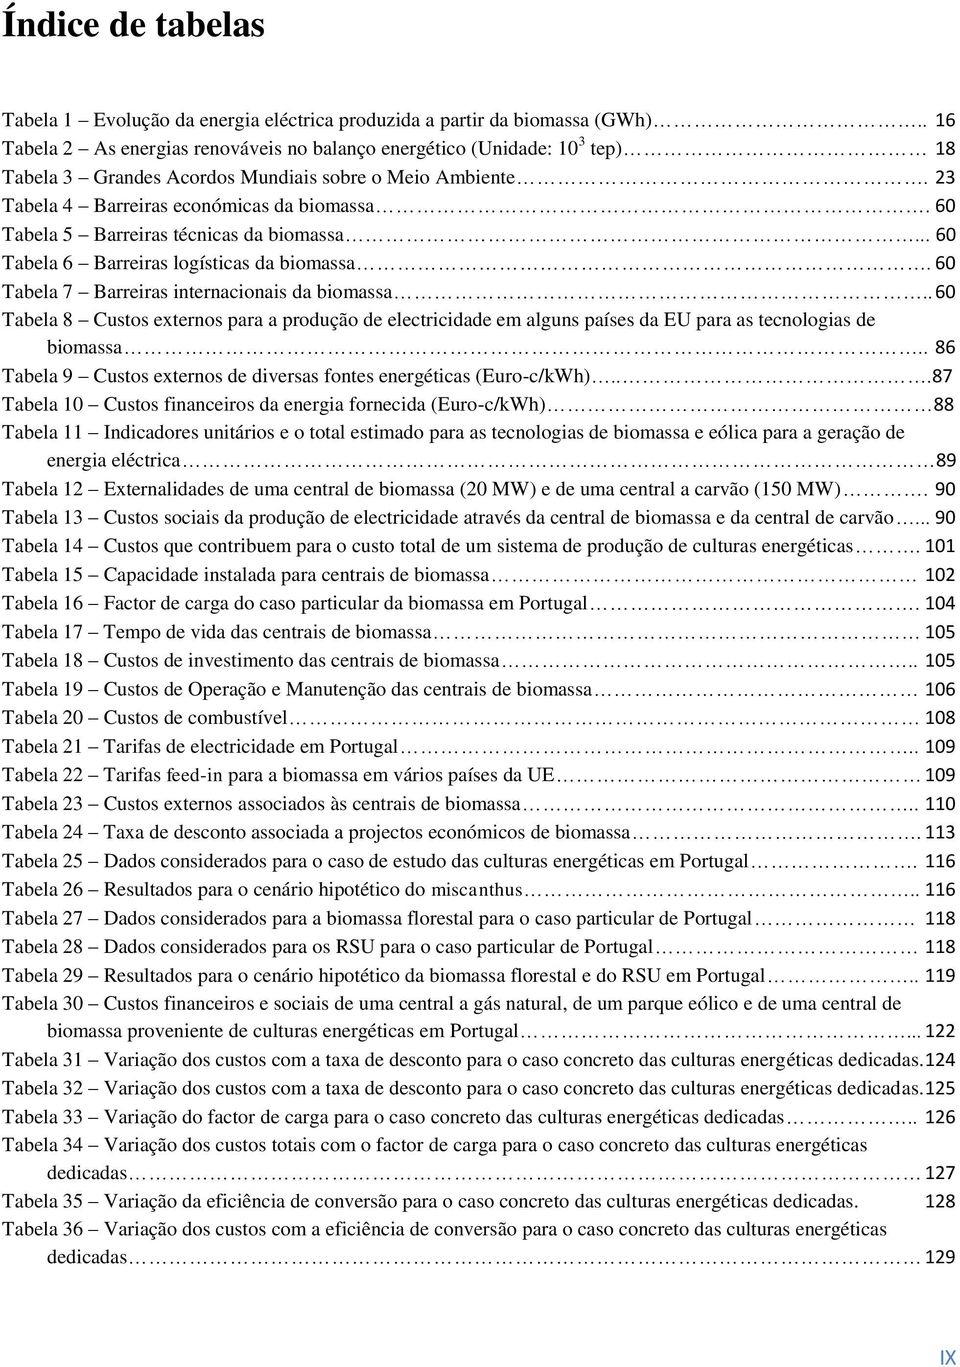 60 Tabela 5 Barreiras técnicas da biomassa... 60 Tabela 6 Barreiras logísticas da biomassa. 60 Tabela 7 Barreiras internacionais da biomassa.